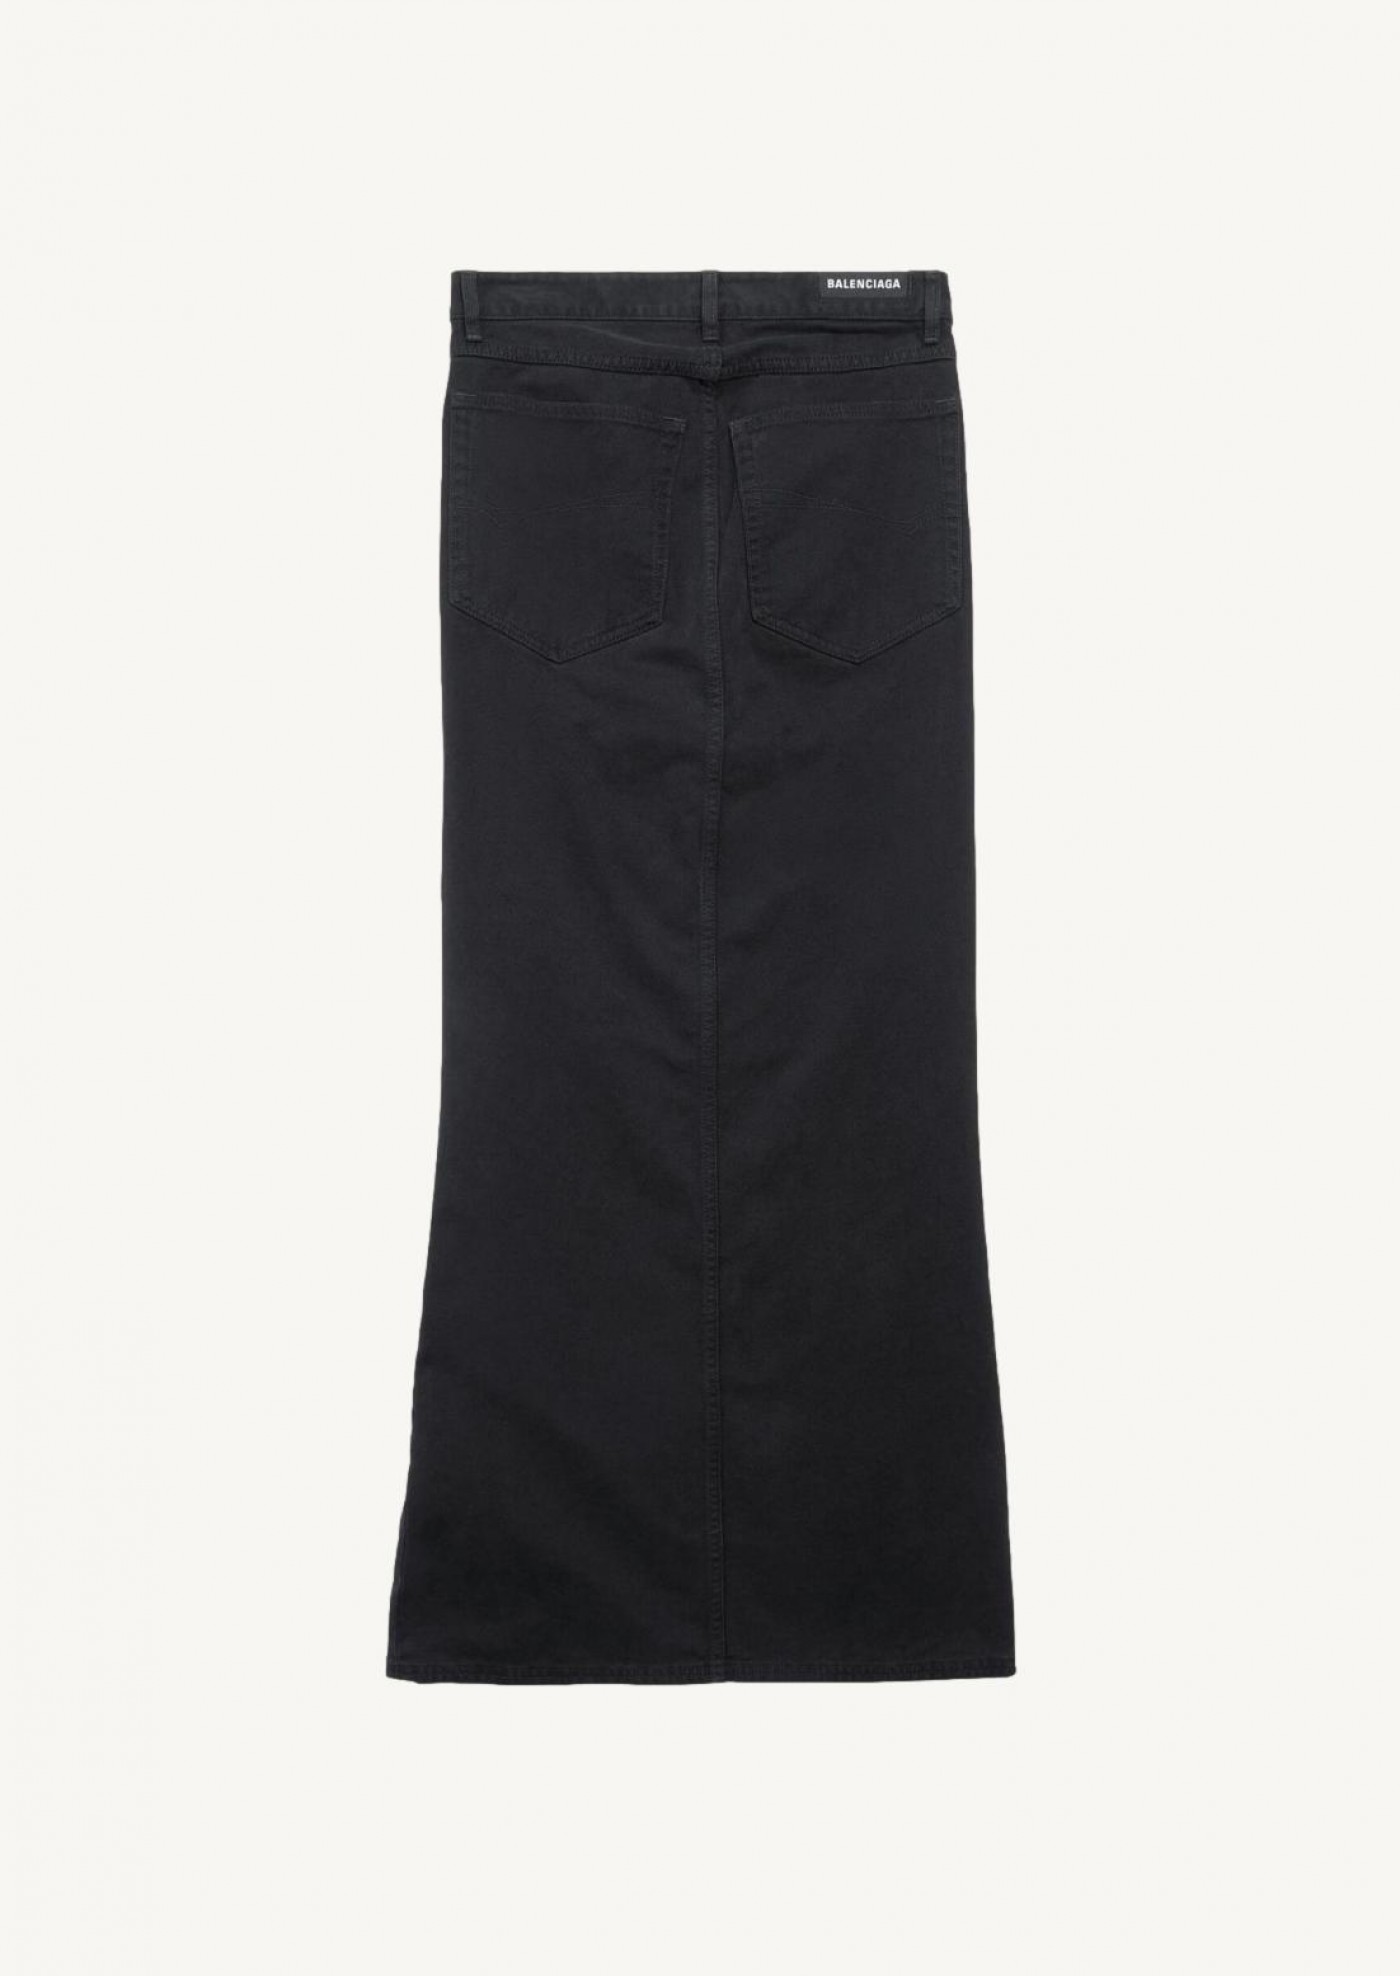 Women's maxi skirt in black